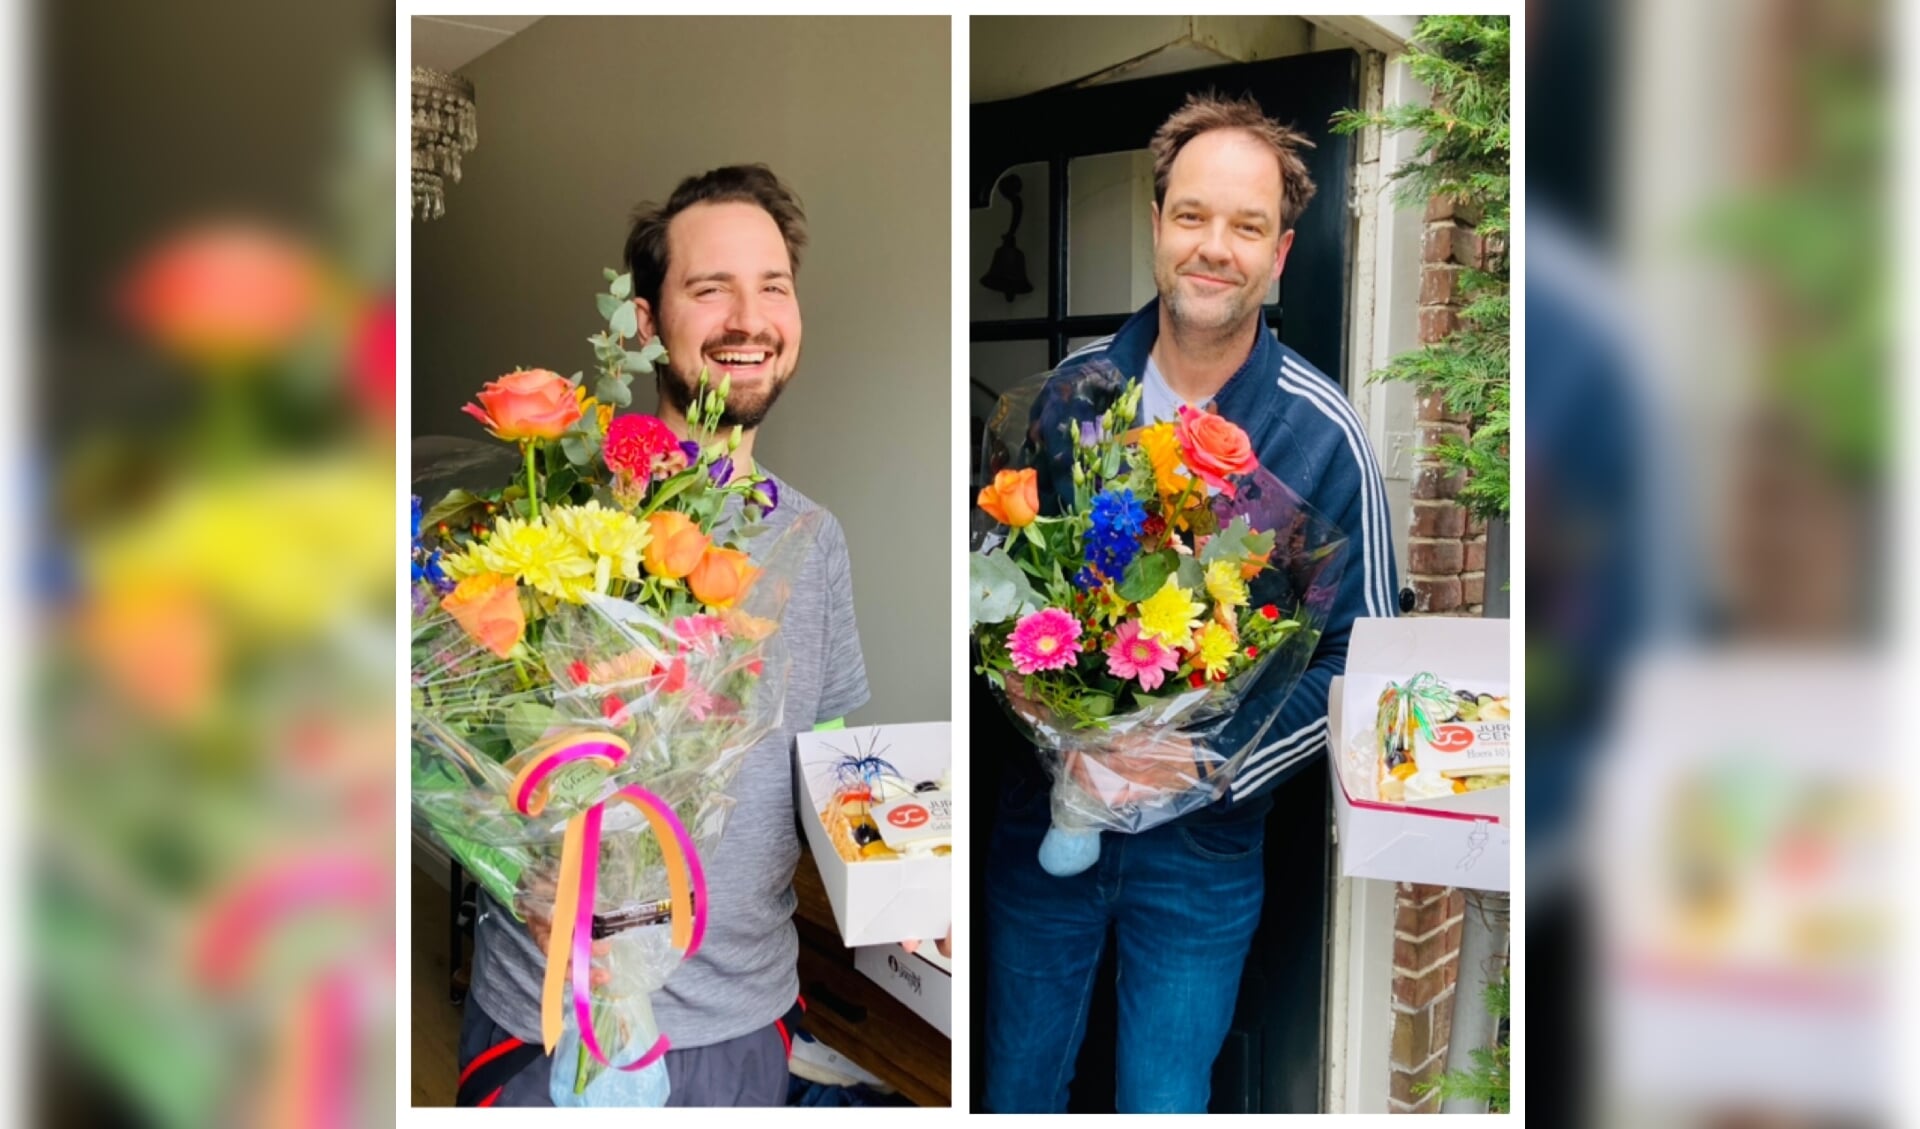 Joris van Vliet en Ronald Smits kregen van hun medewerkers taart en bloemen thuisbezorgd vanwege hun 10-jarig bedrijfsjubileum